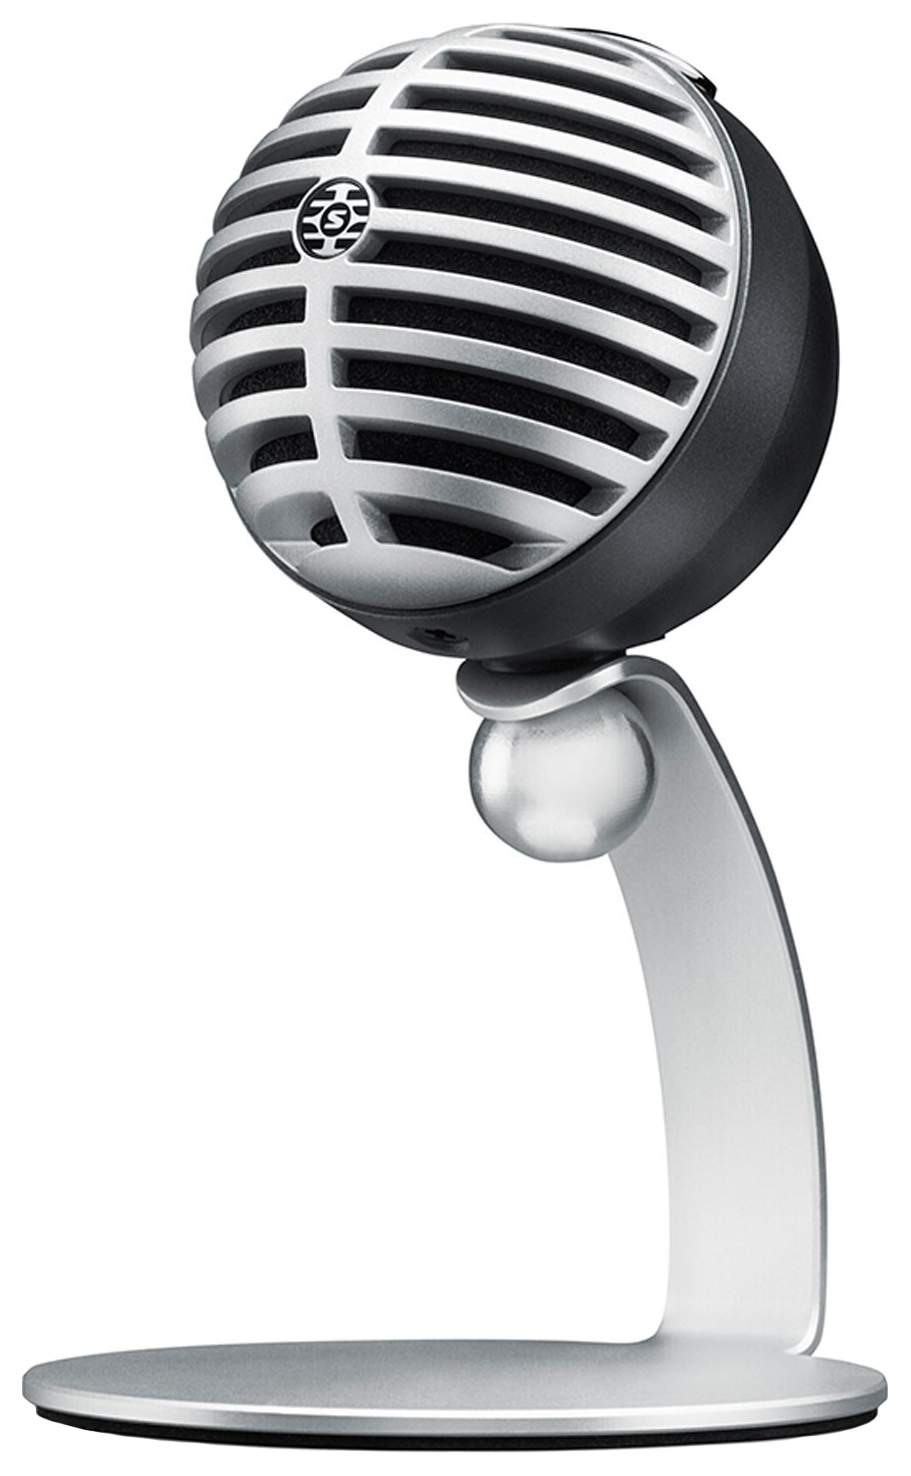 Изображение SHURE MOTIV MV5/A-LTG цифровой конденсаторный микрофон для записи на компьютер и устройства Apple